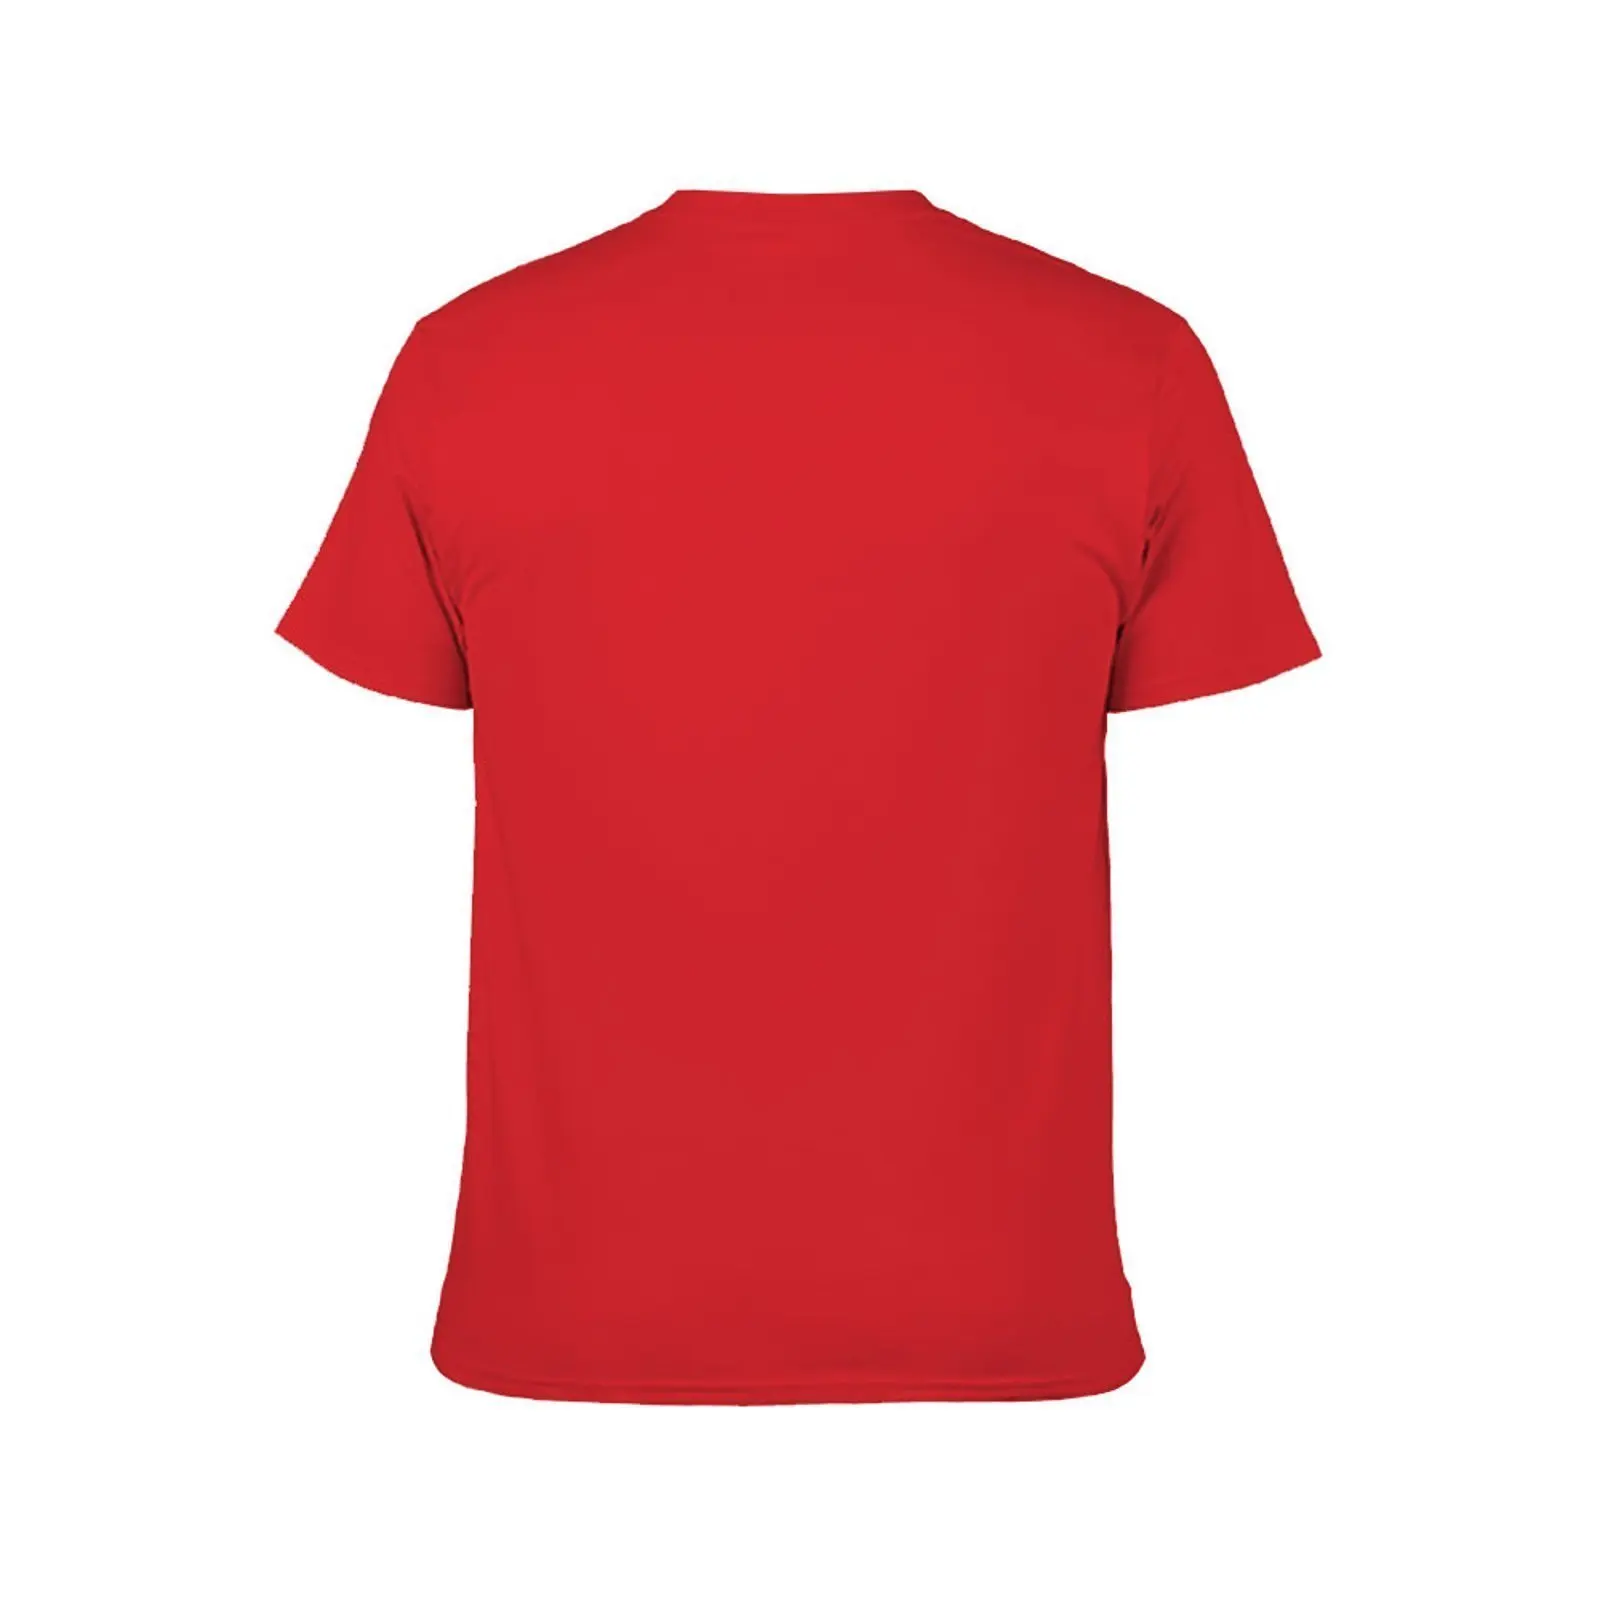 Bubba Gump Shrimp co. Футболка, быстросохнущая футболка, великолепная футболка, мужские забавные футболки Изображение 2